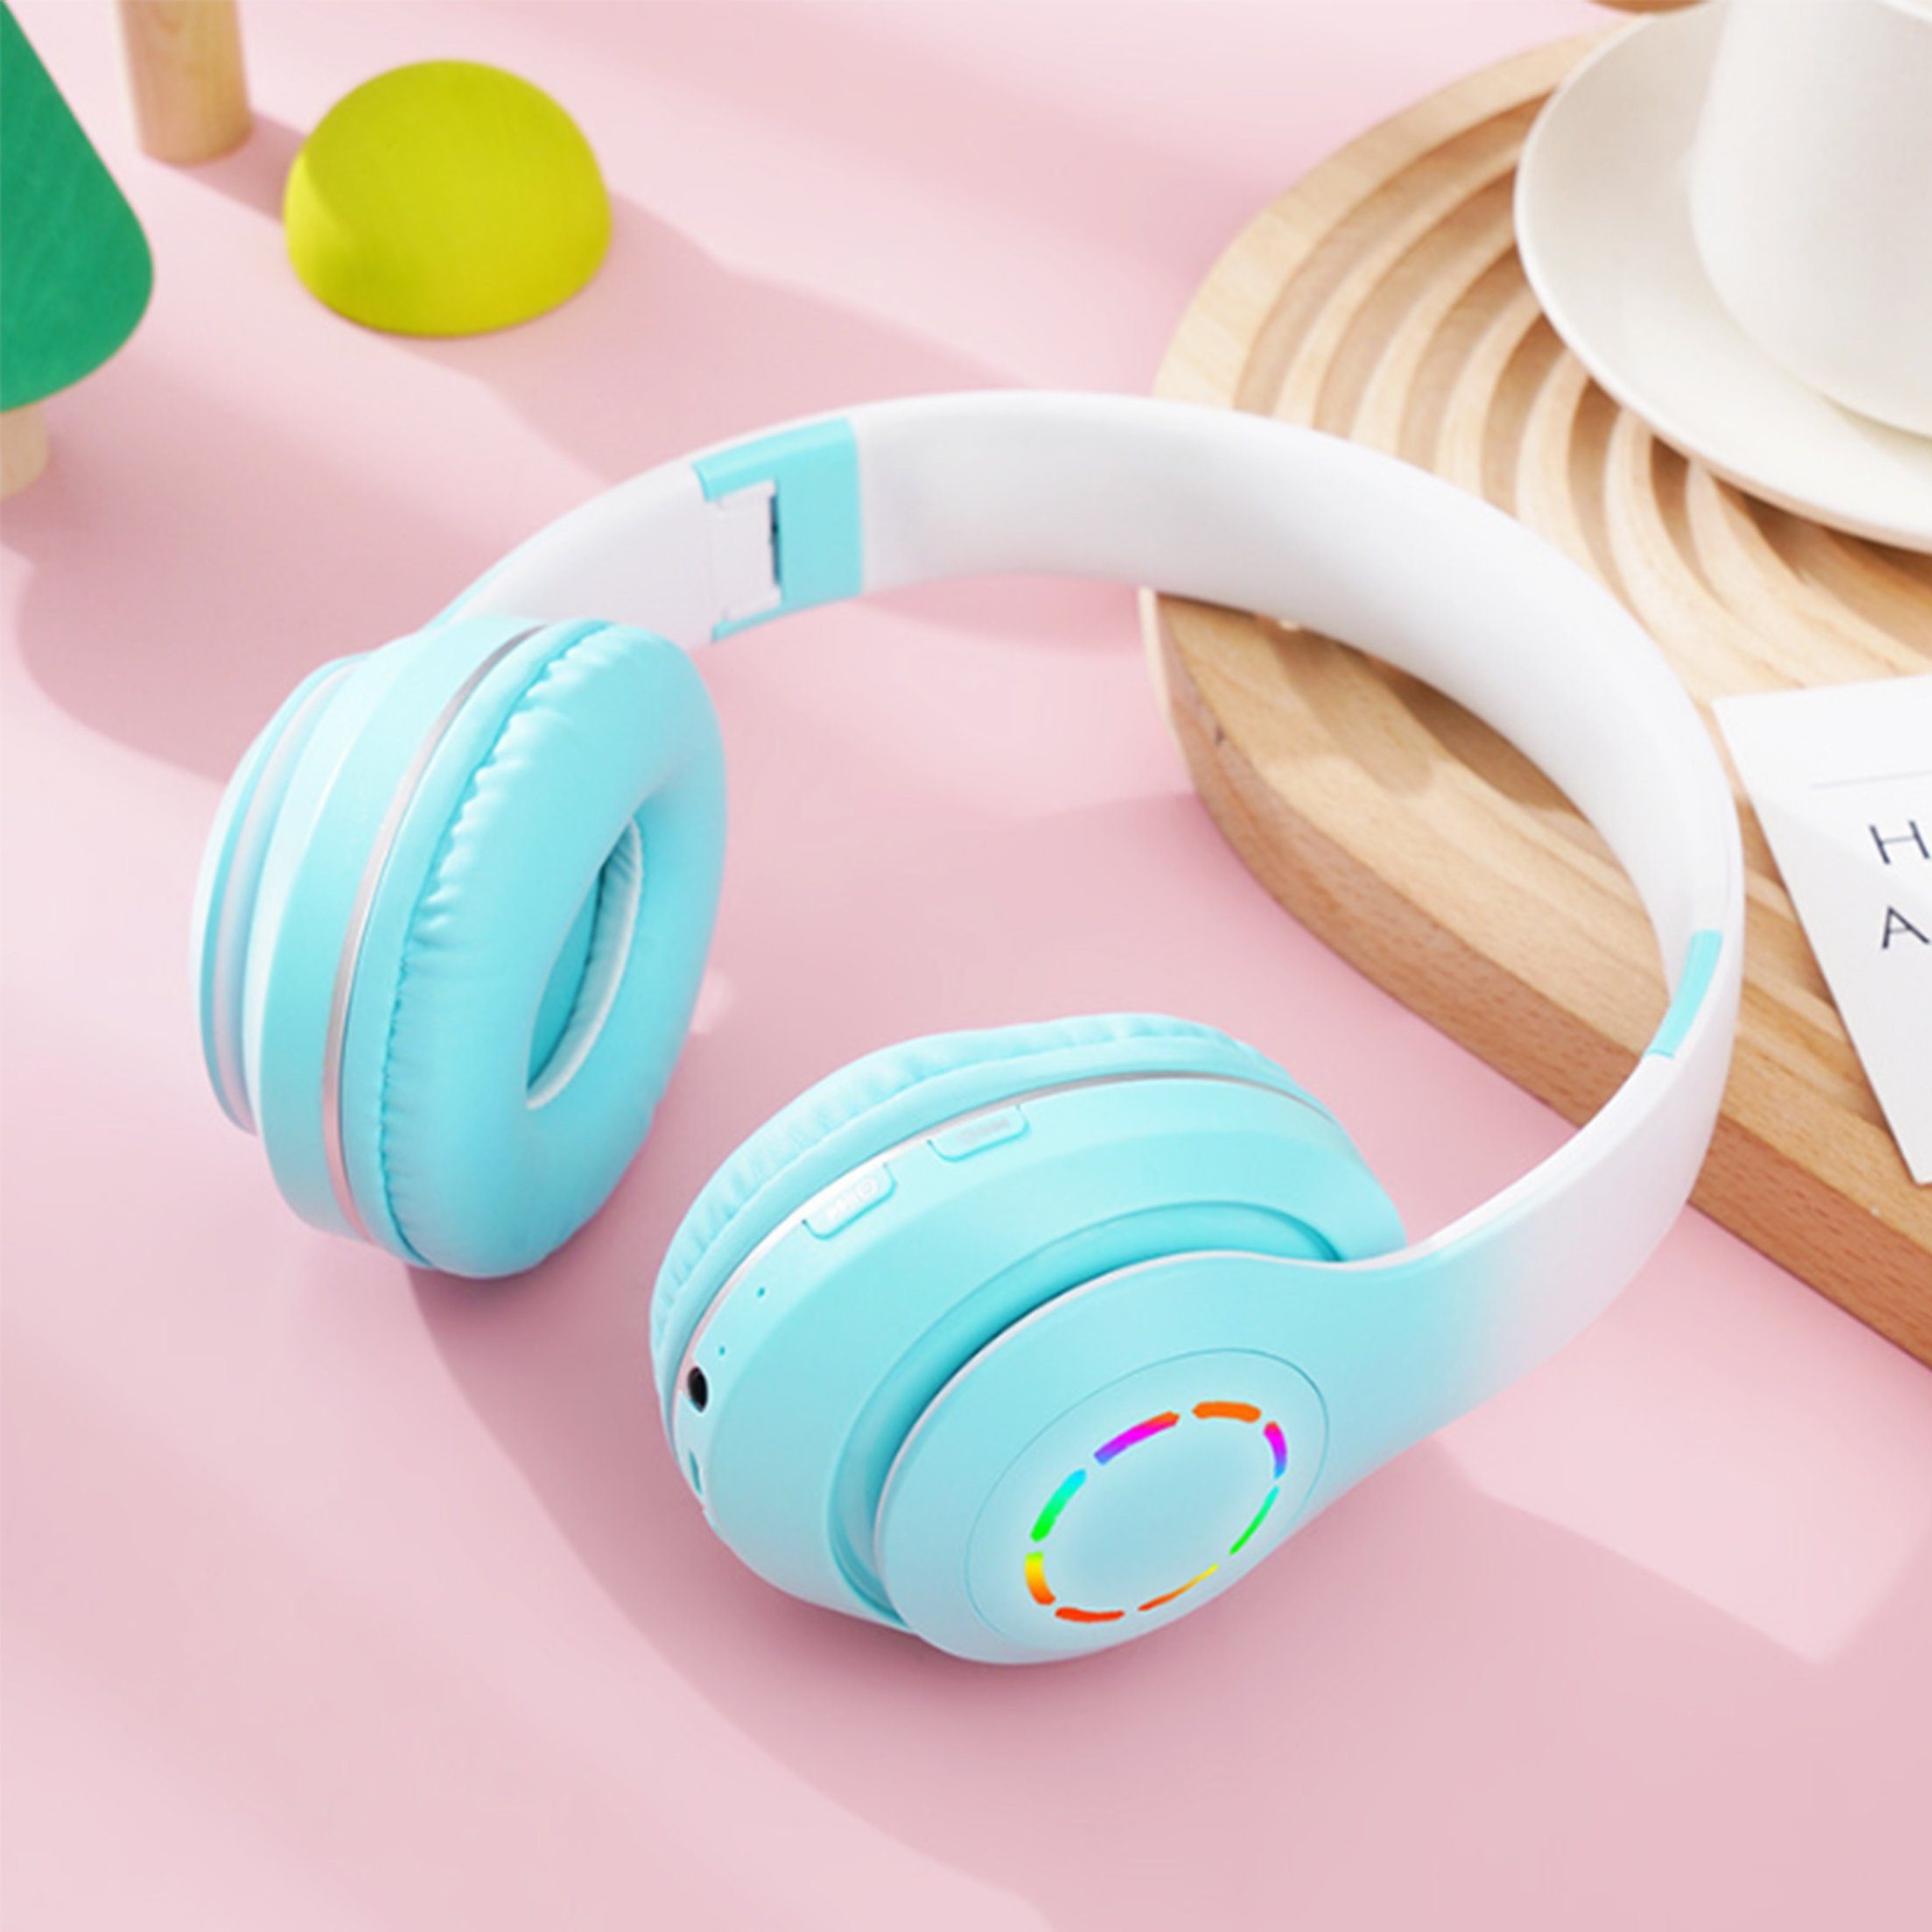 Diida Kopfhörer,Bluetooth-Kopfhörer,Over Ear Kabelloses Headset Funk-Kopfhörer Farbverlauf Grün